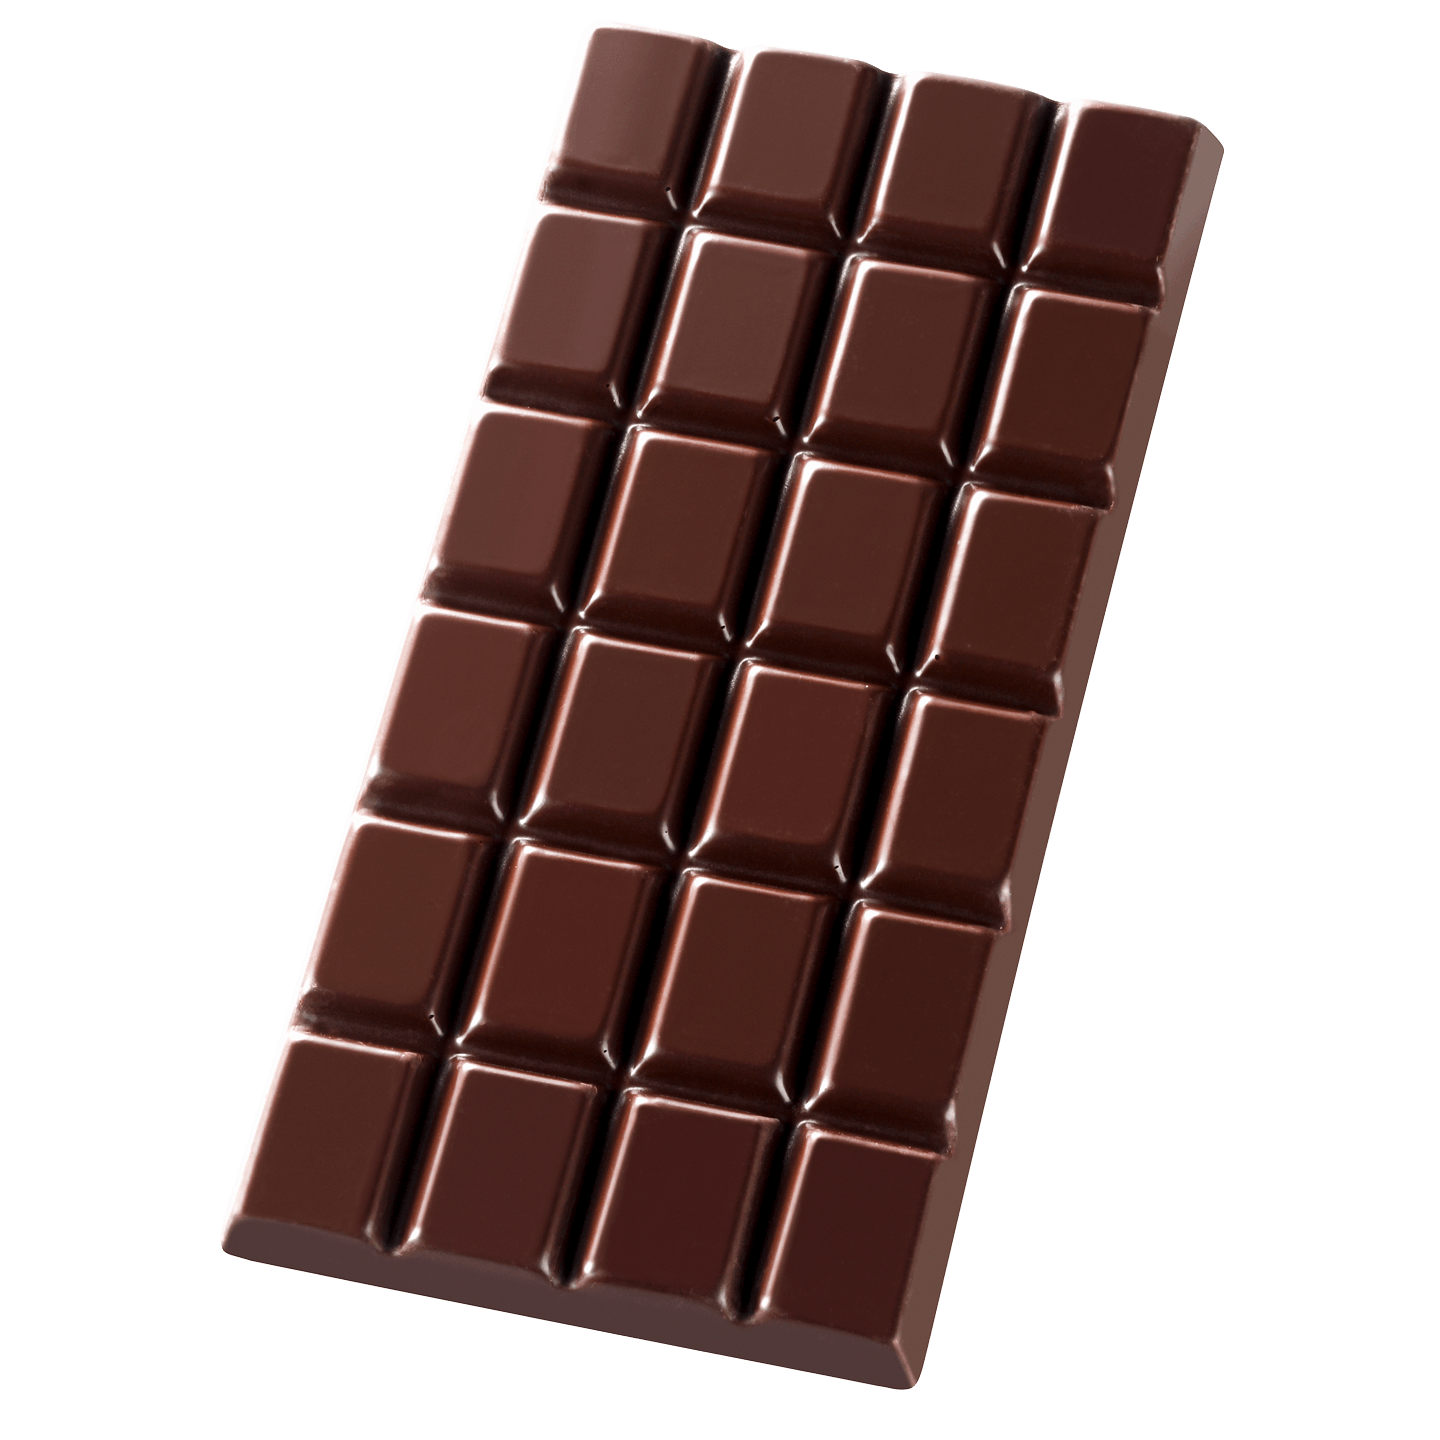 Плитка темного шоколада. Плитка шоколада. Шоколадная плитка. Шоколад темный плиточный. Черный шоколад плитка.